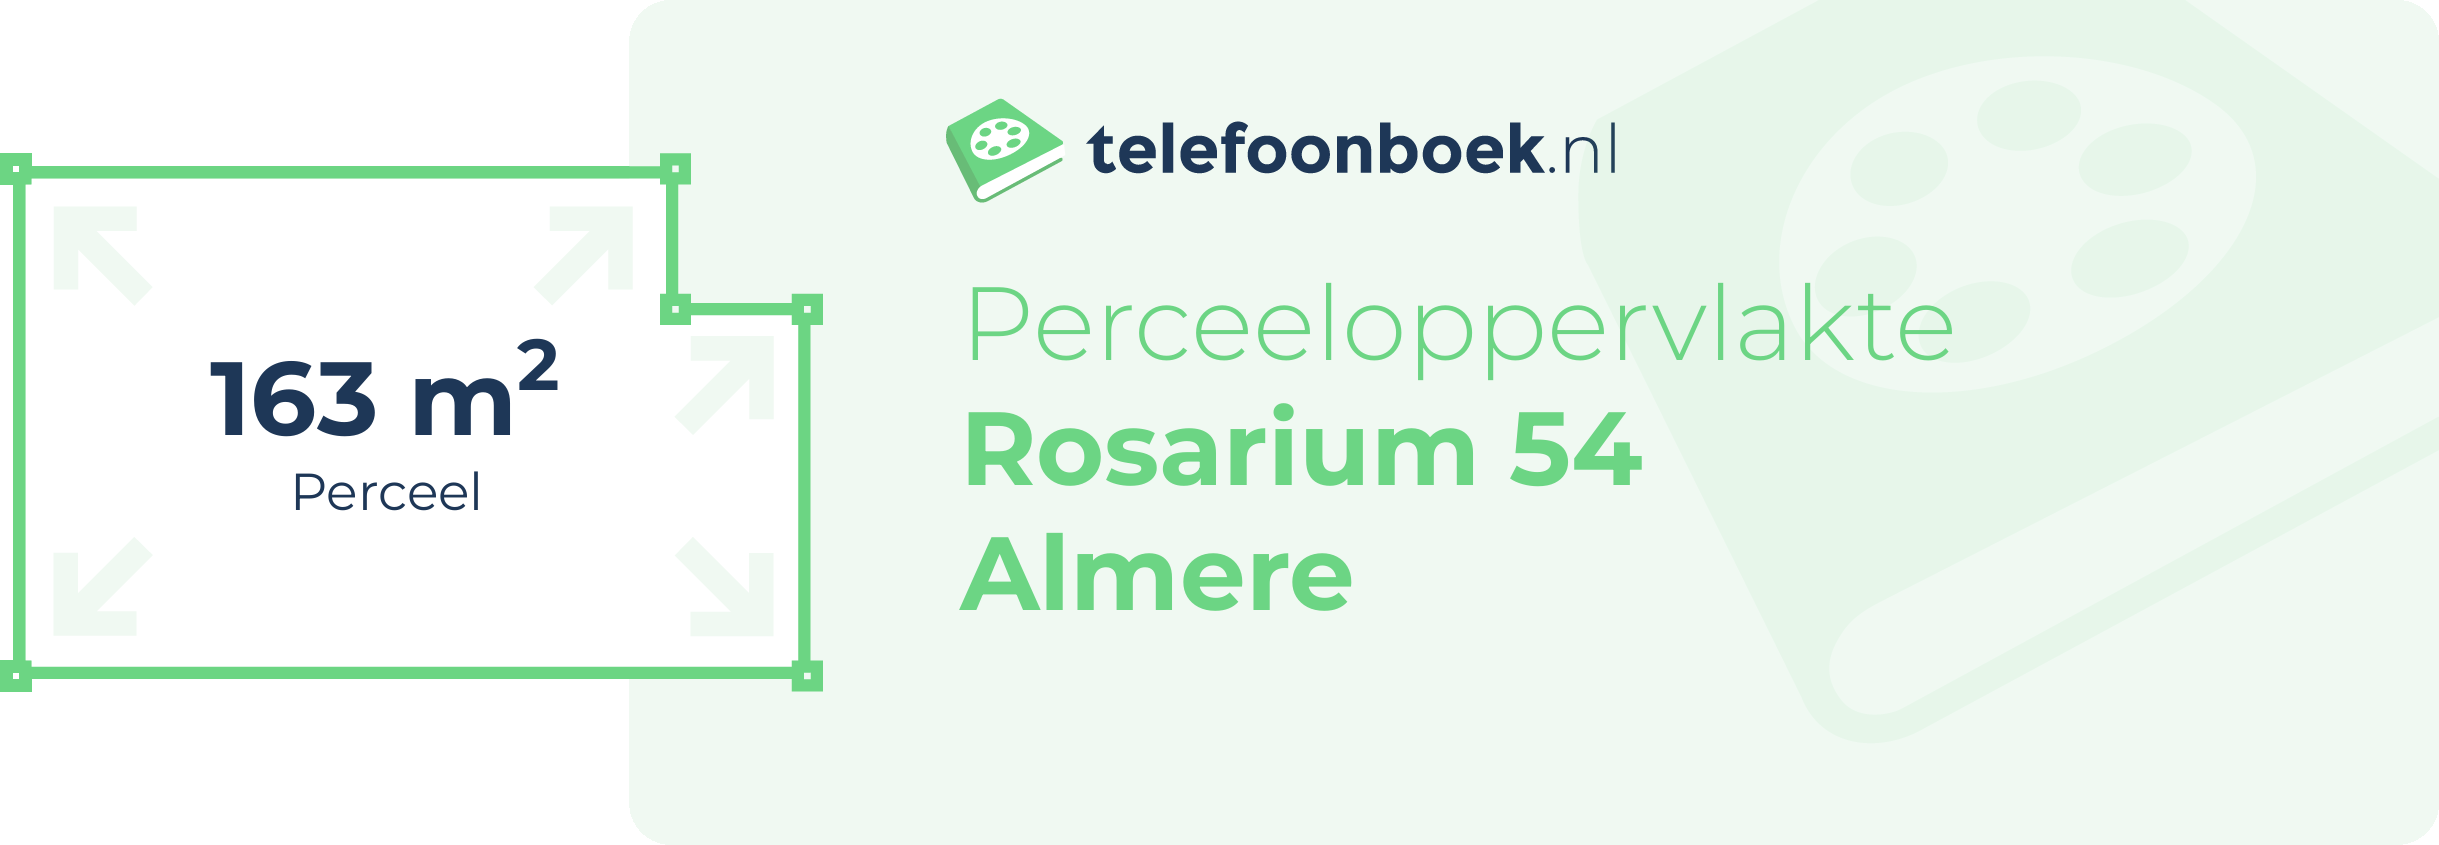 Perceeloppervlakte Rosarium 54 Almere